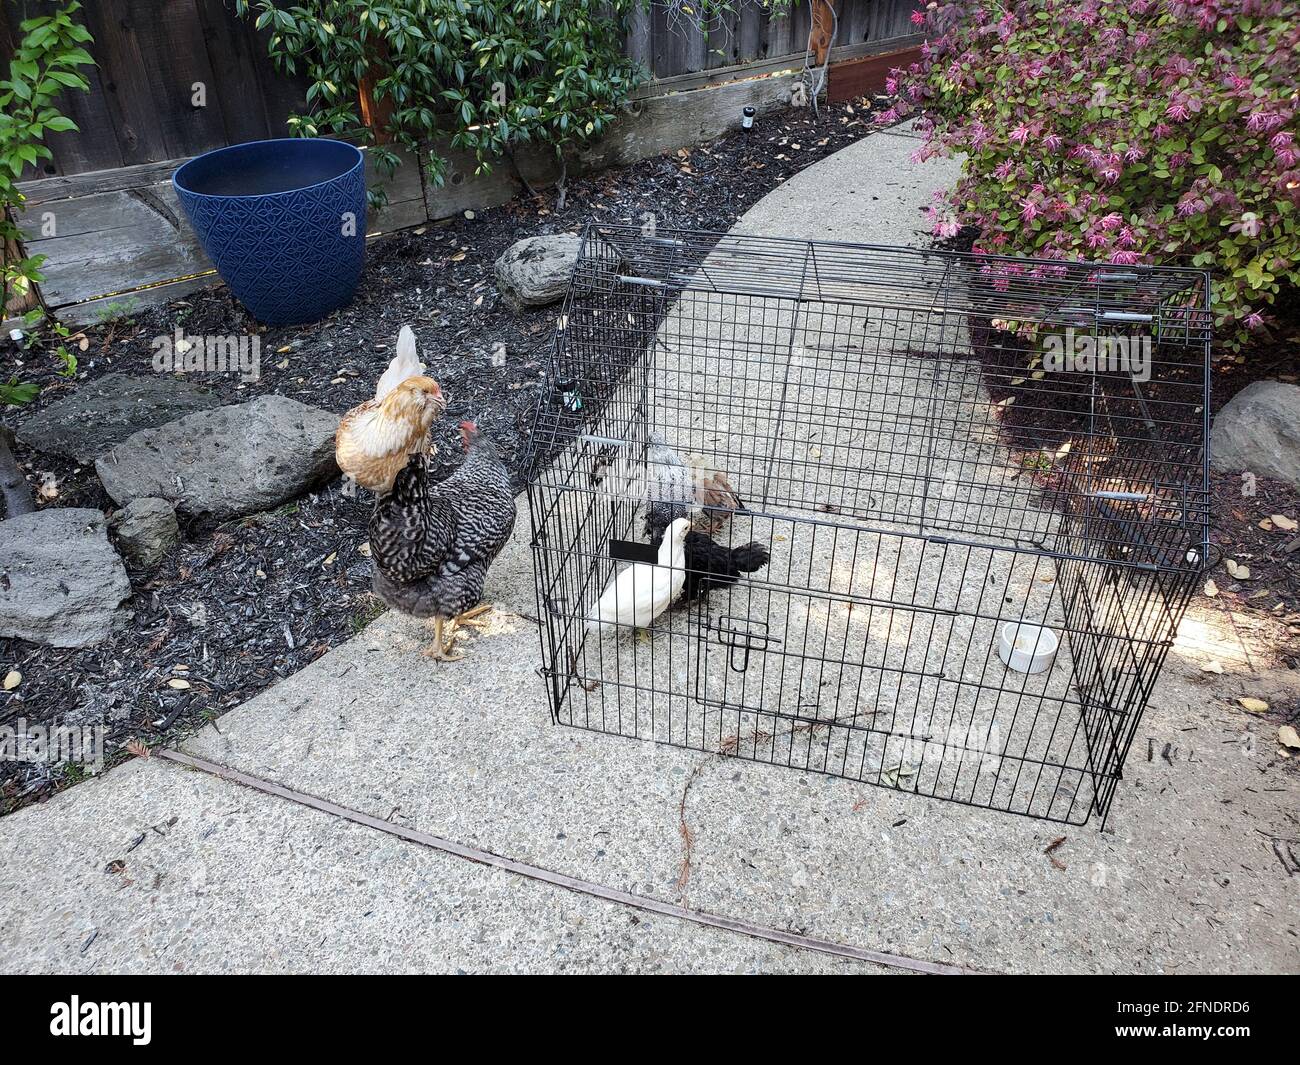 Vue en grand angle d'un sentier de jardin, avec deux poulets adultes (Gallus gallus domesticus) debout à côté de plusieurs juvéniles en cage, Californie, 29 mars 2021. () Banque D'Images